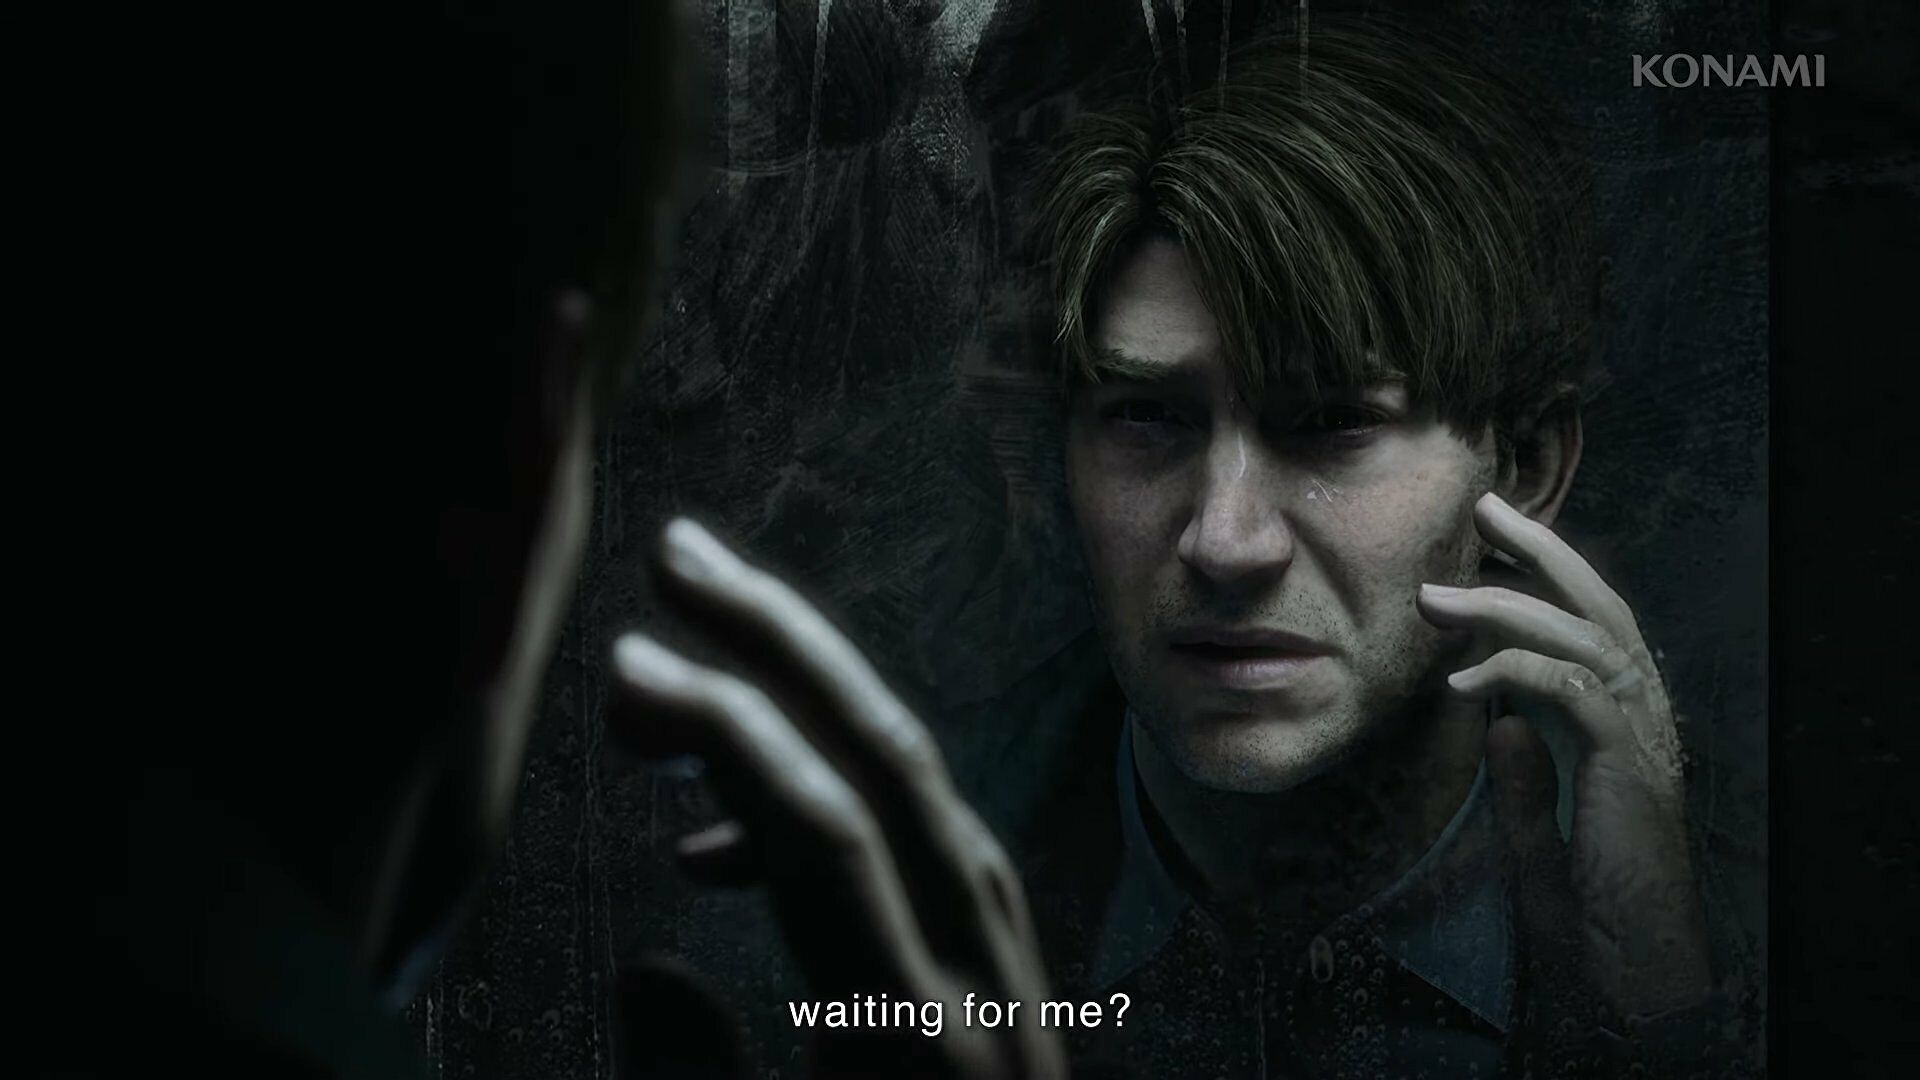 جیمز در بازسازی Silent Hill 2 در آینه به خود نگاه می کند